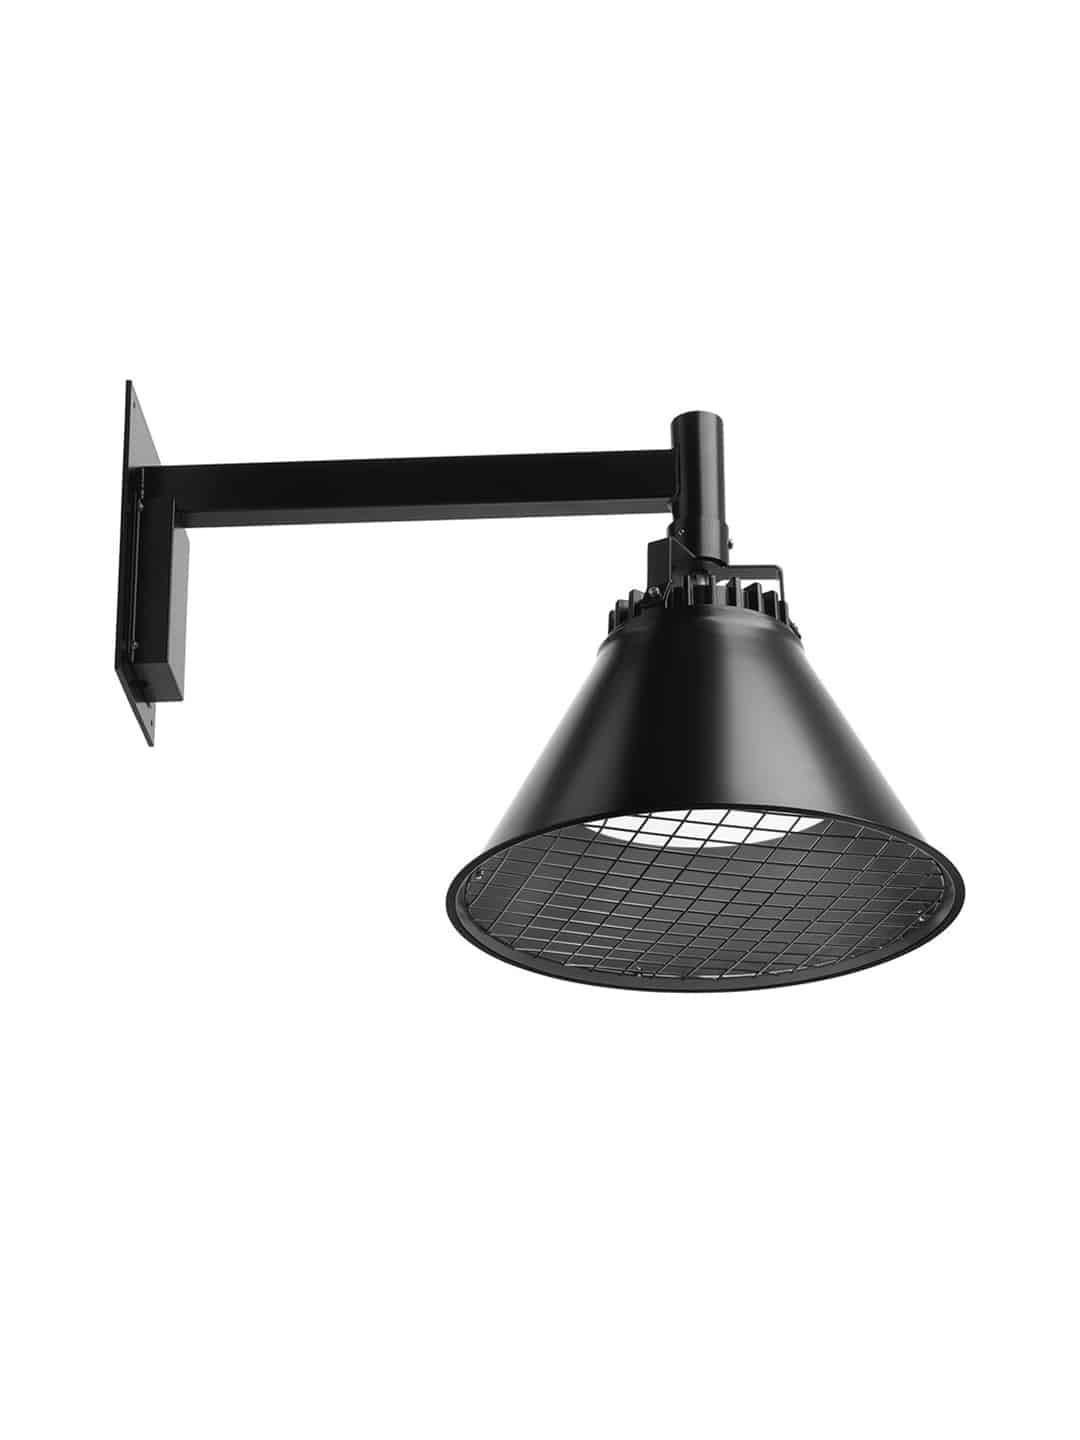 Дизайнерский уличный подвесной светильник Zero Lighting City черного цвета